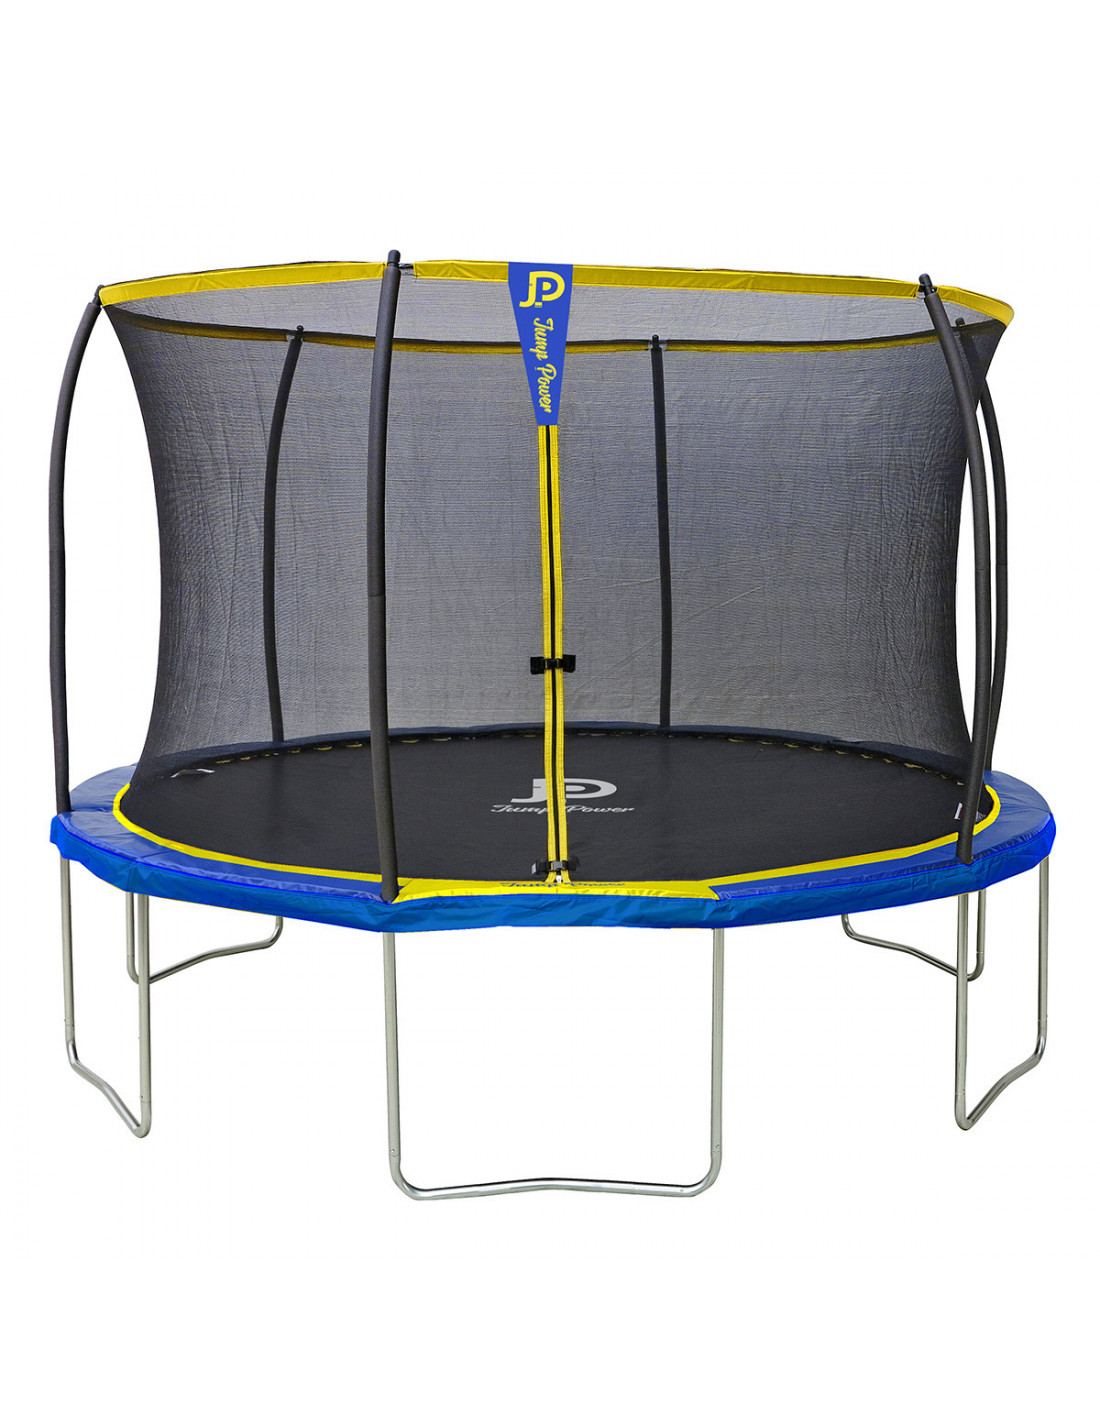 Jump Power cm - N°1 van de trampoline in Frankrijk - superieur aan Decathlon